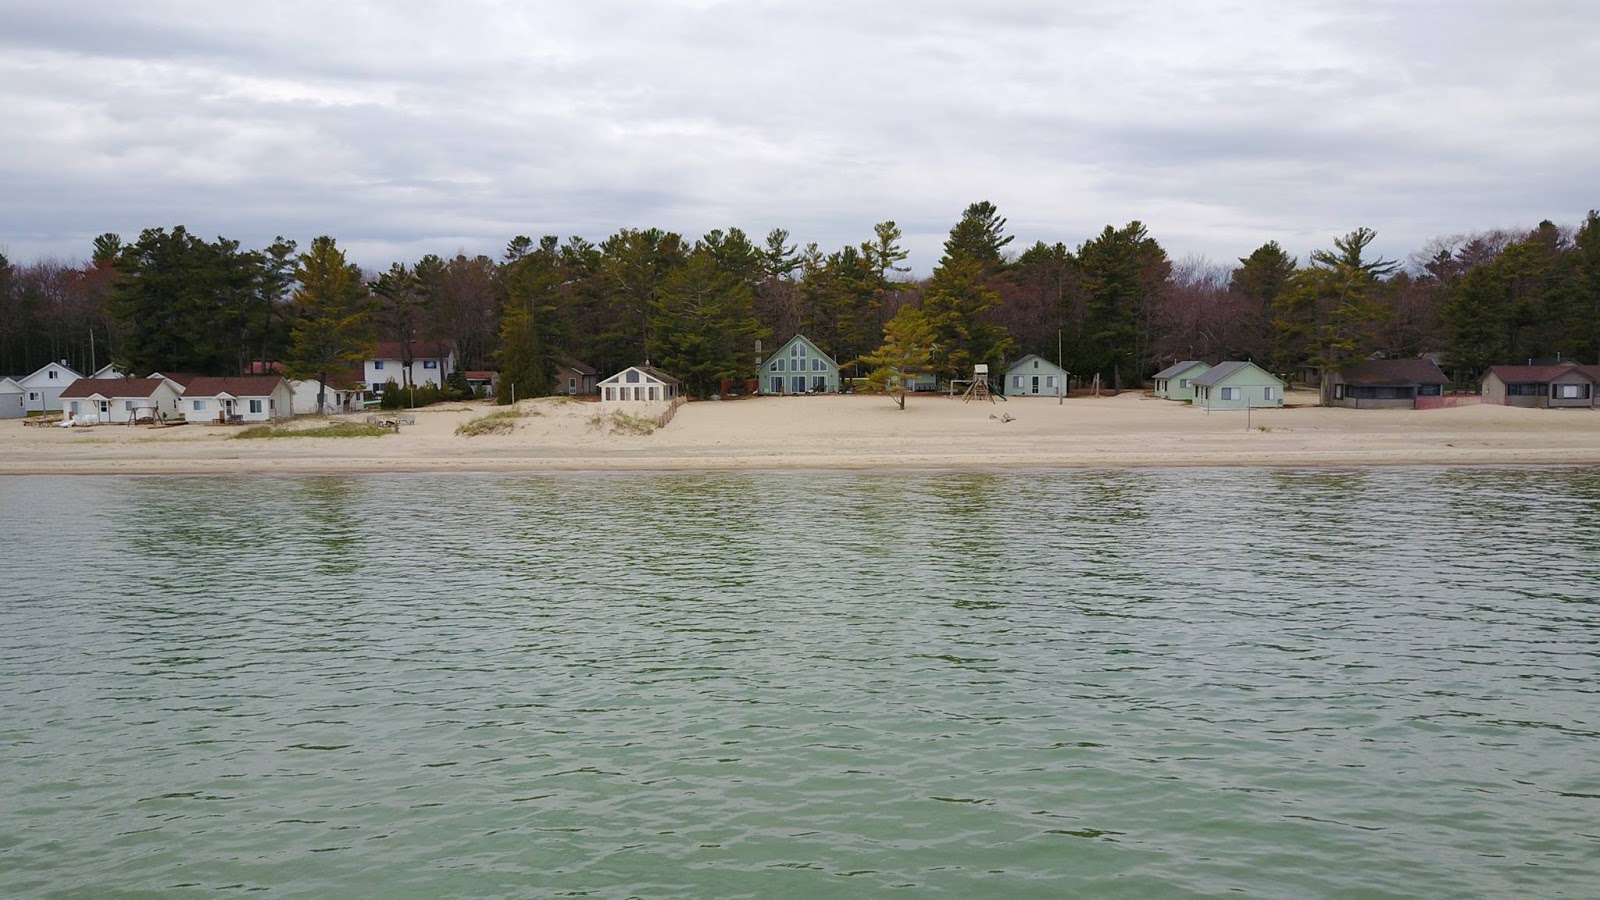 Cedar lake resort area'in fotoğrafı turkuaz saf su yüzey ile